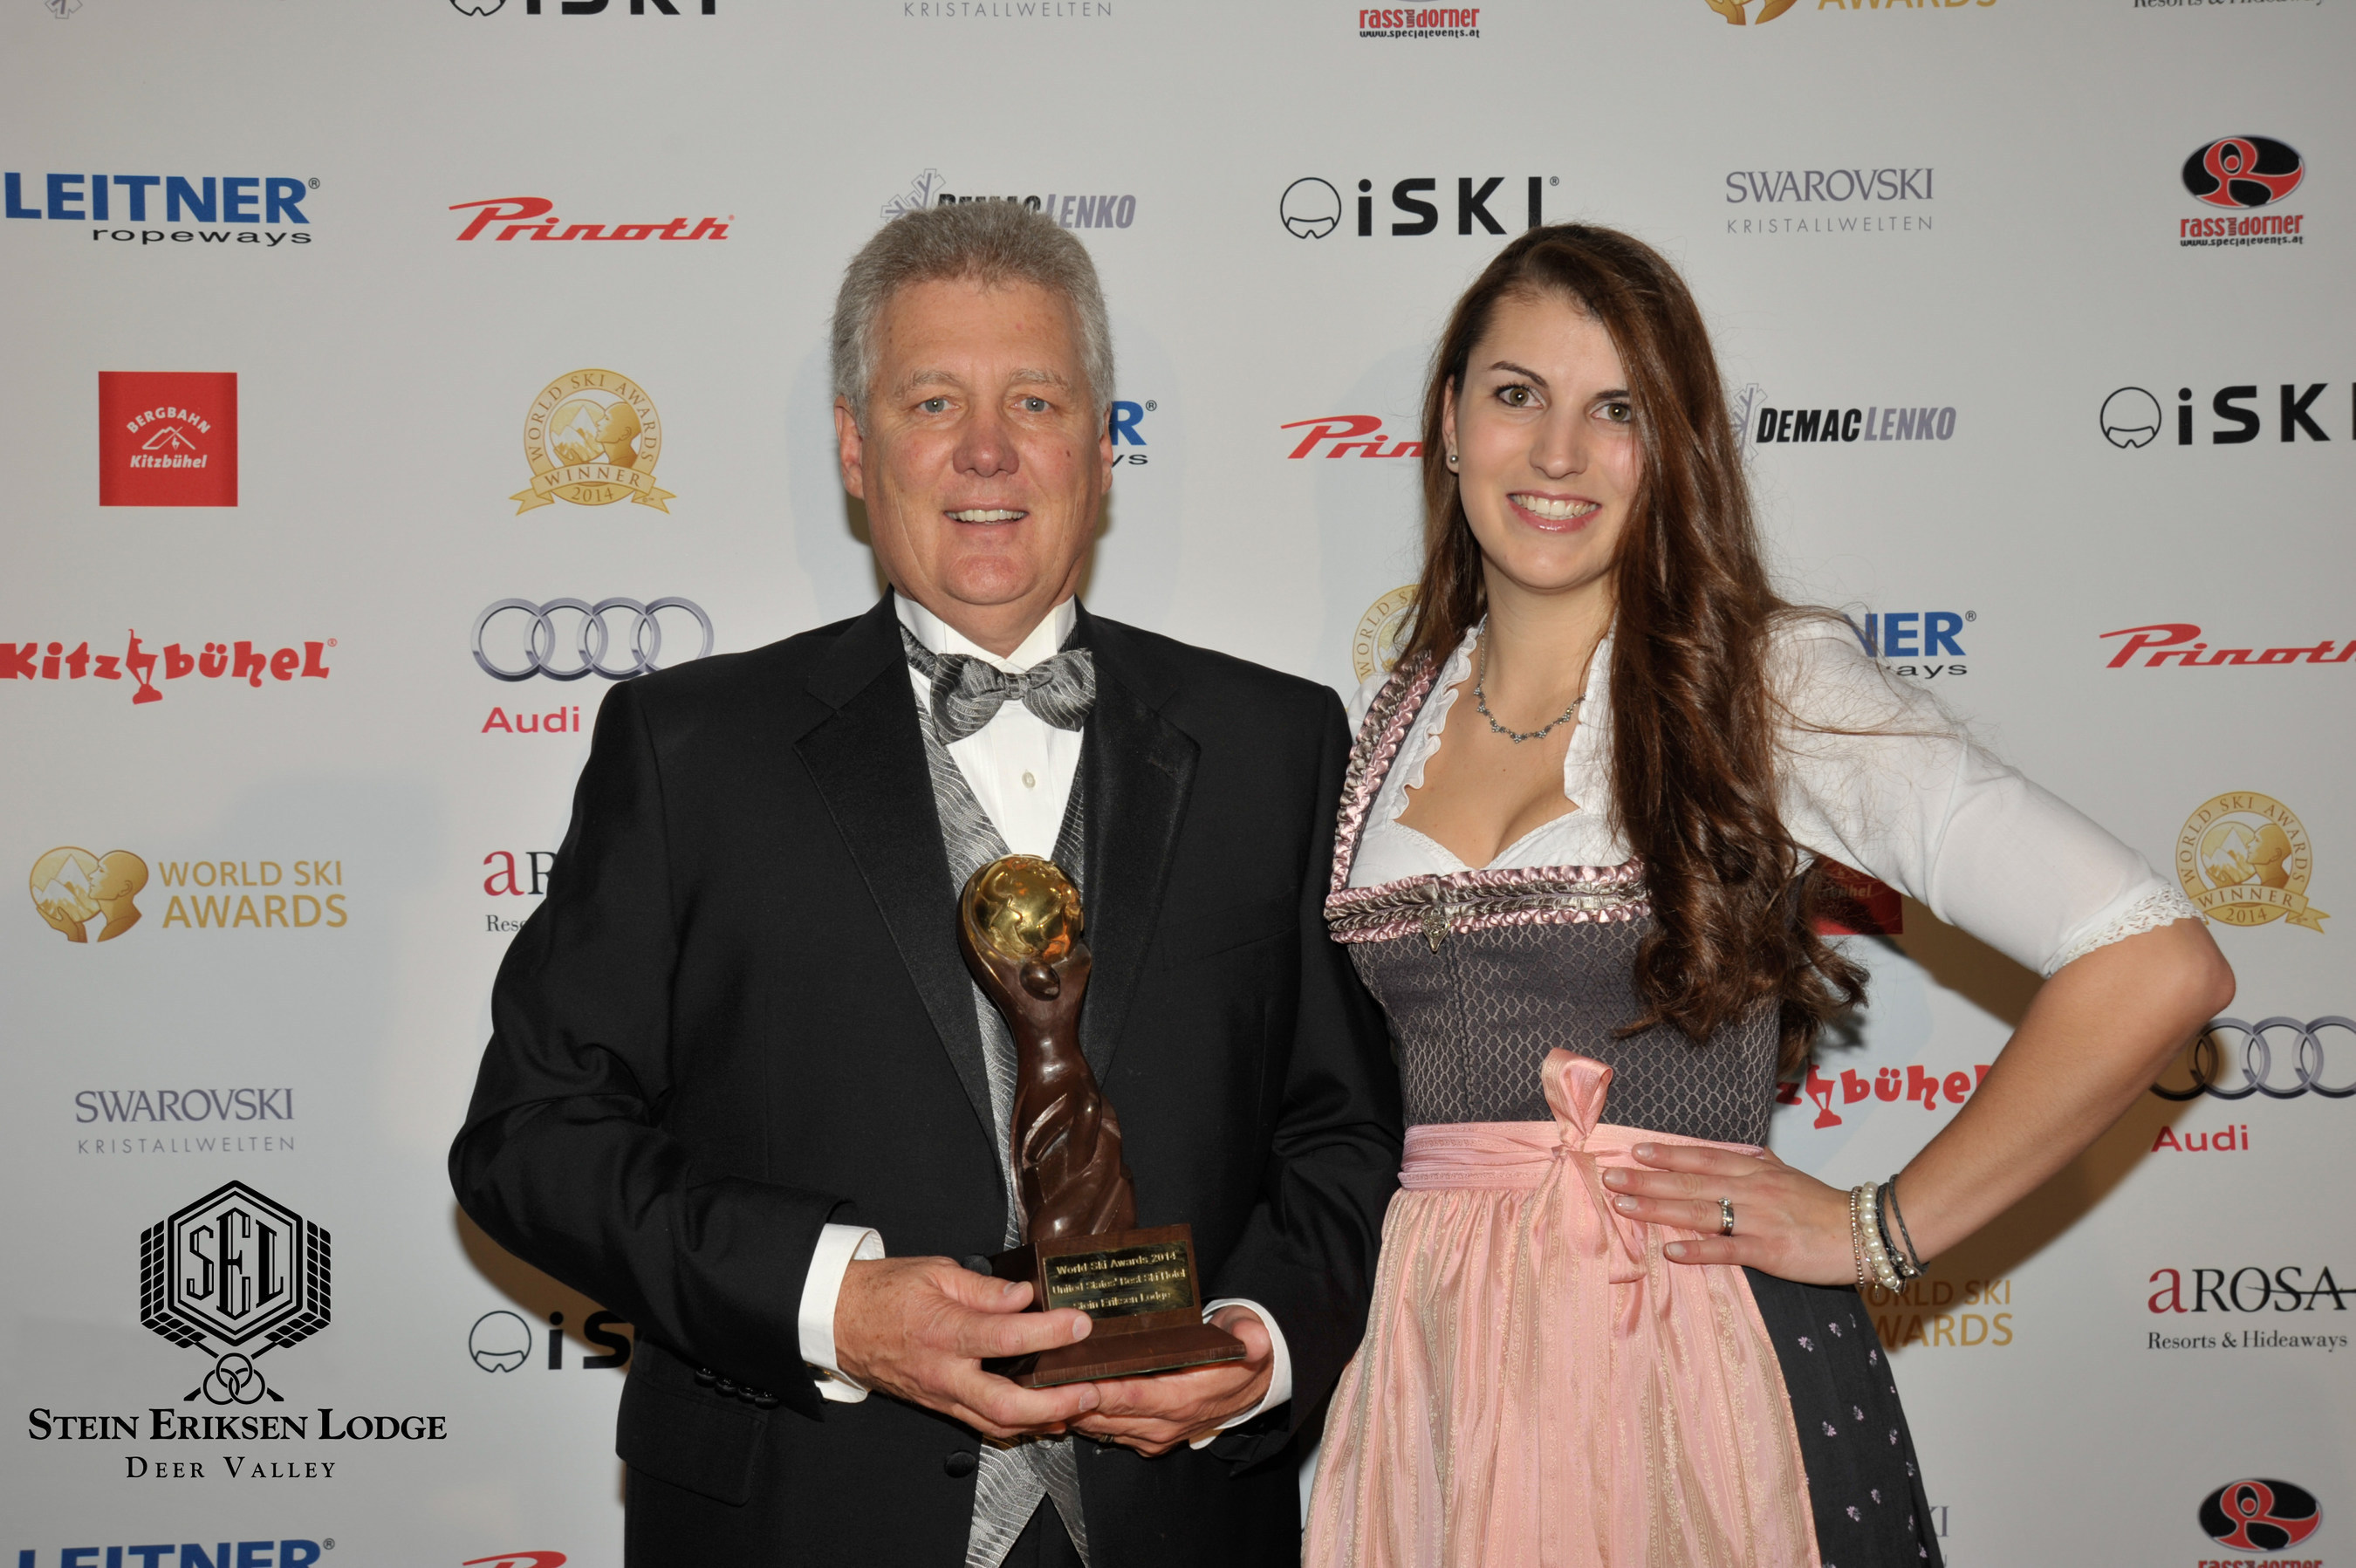 Stein Eriksen Lodge Awarded World's Best Ski Hotel